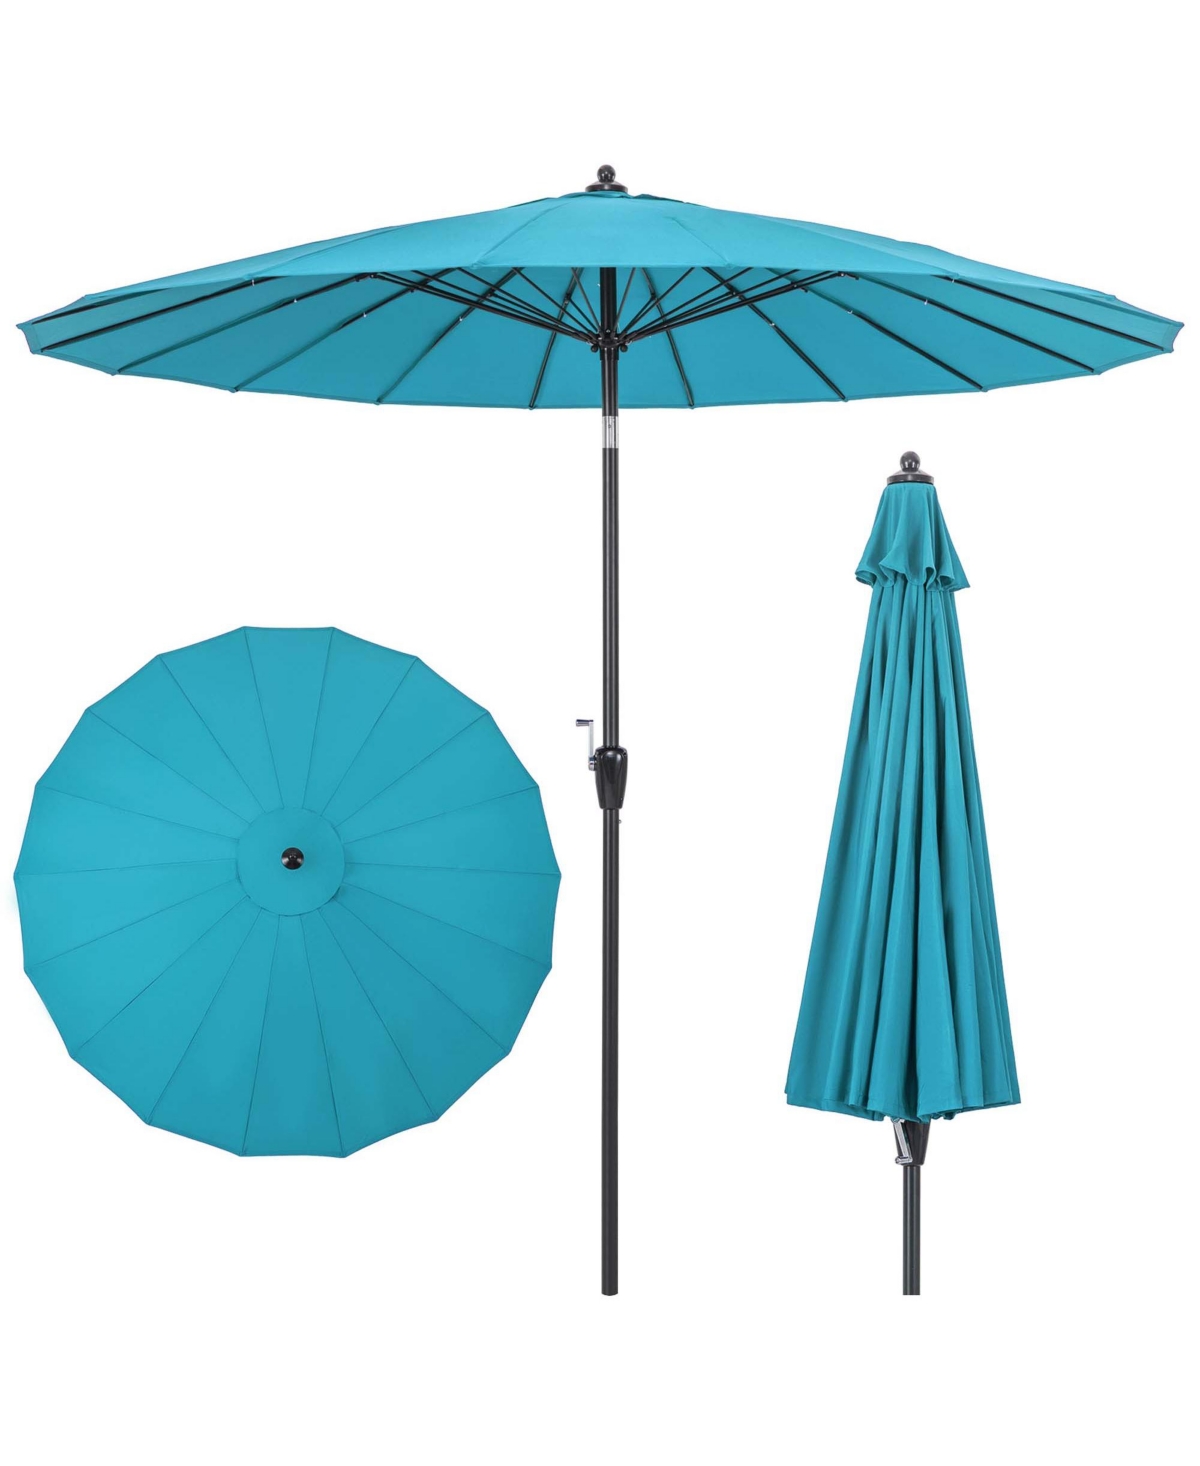 9 Ft Patio Round Market Umbrella with Push Button Tilt, Crank Handle - Blue